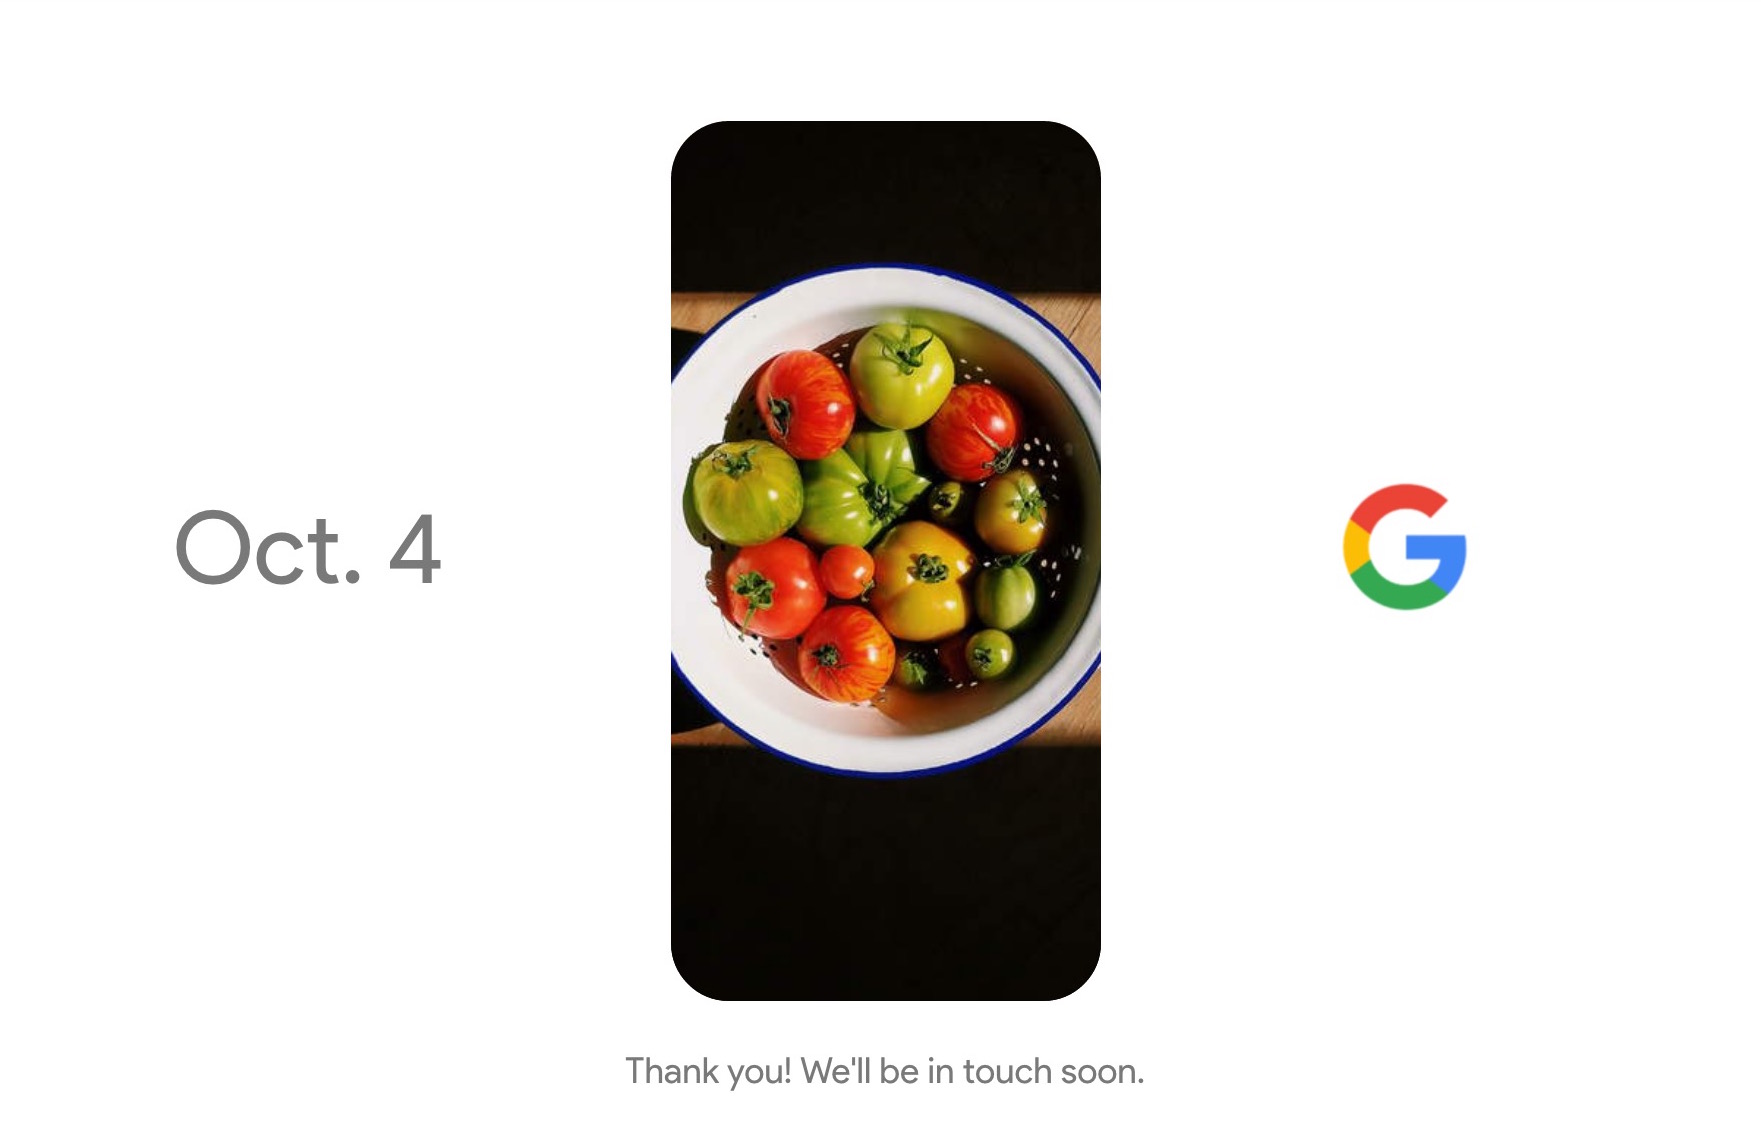 グーグル、10月4日に次期スマホ「Pixel」発表へ。特設サイトをオープン